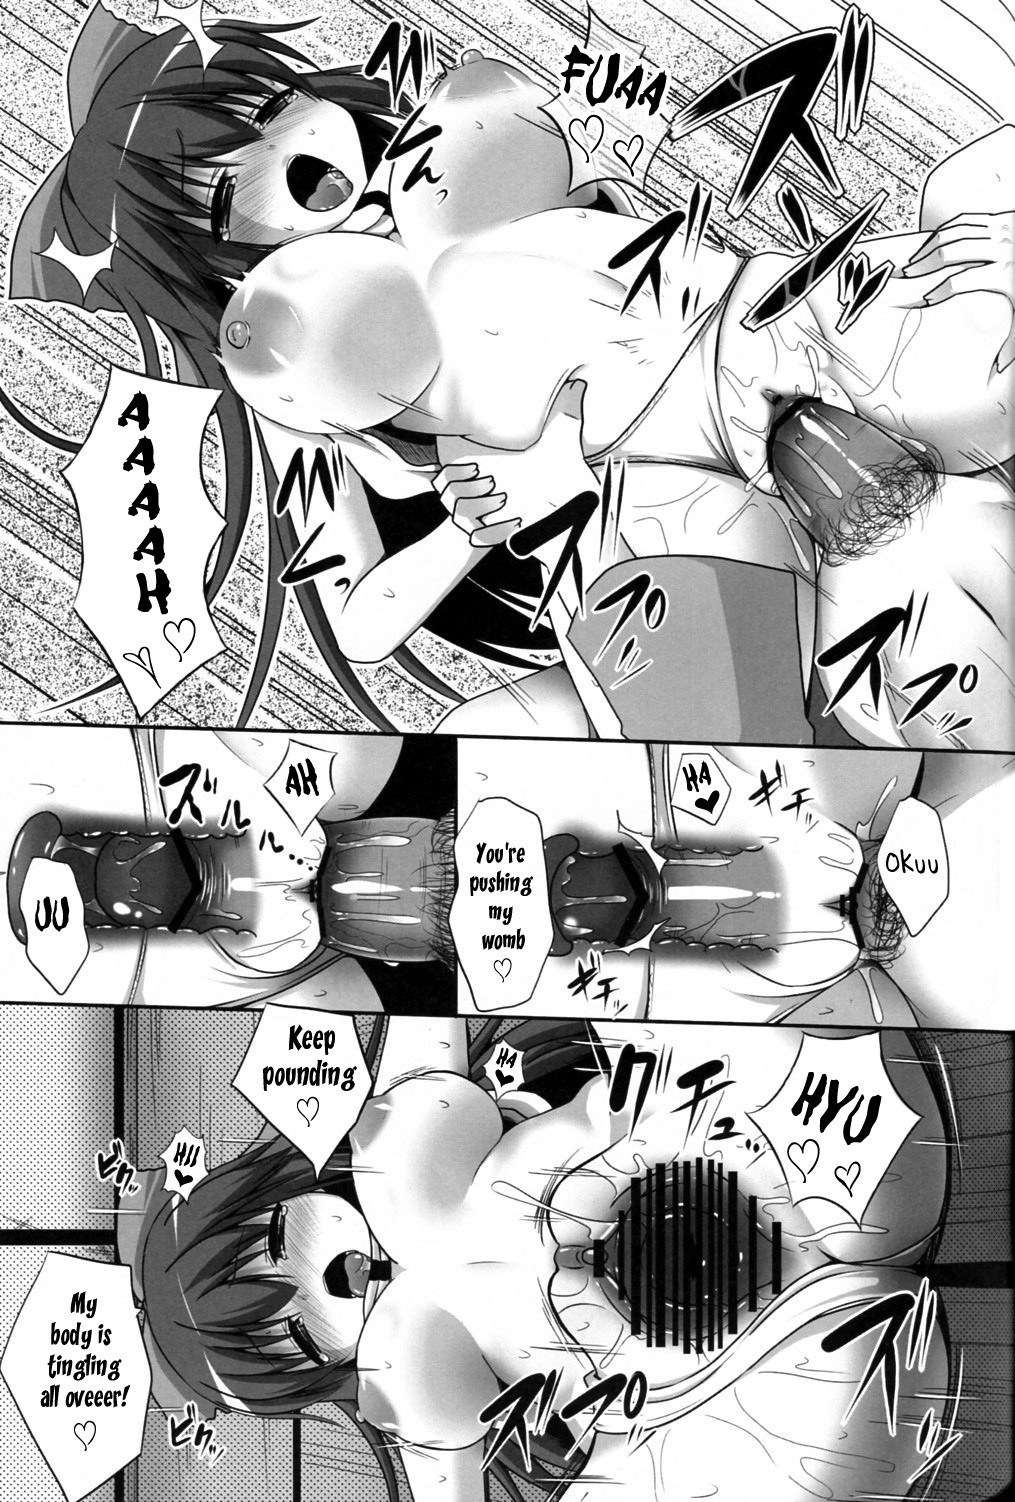 Love Seed 8 hentai manga picture 16